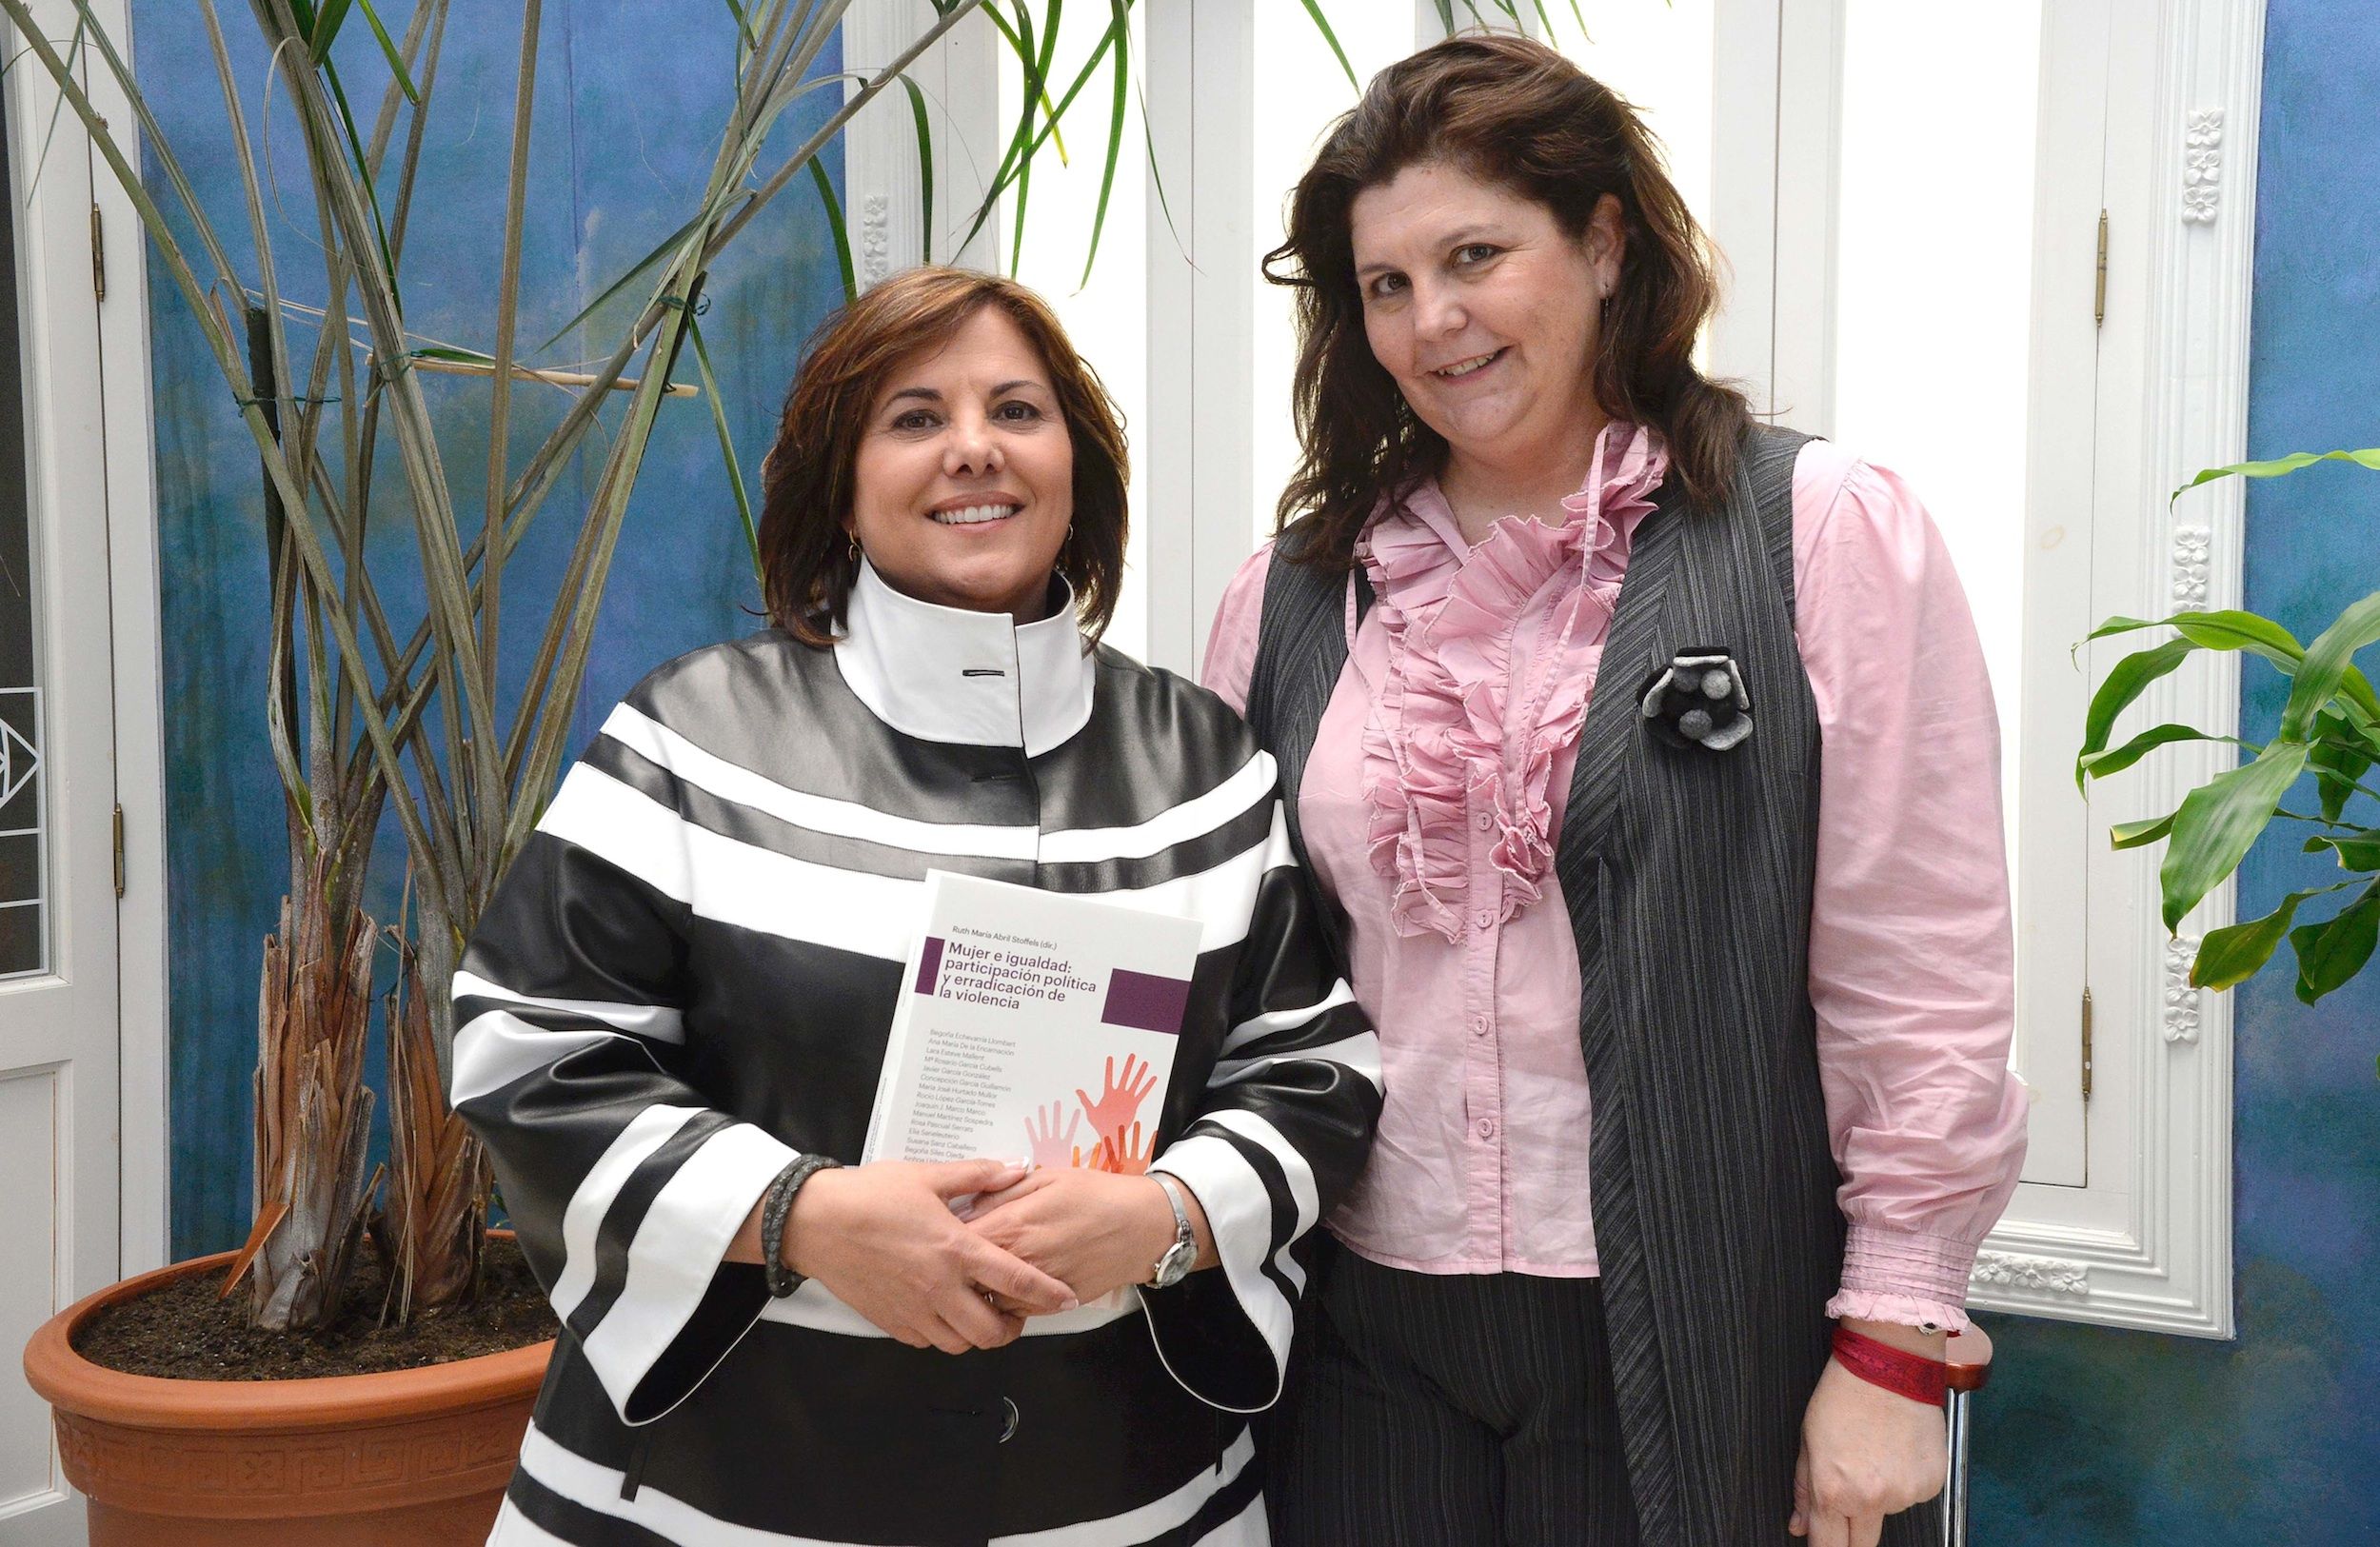 La directora general de Formación Profesional, Marina Sánchez, y la profesora Ruth Abril, coordinadora del libro "Mujer e Igualdad".